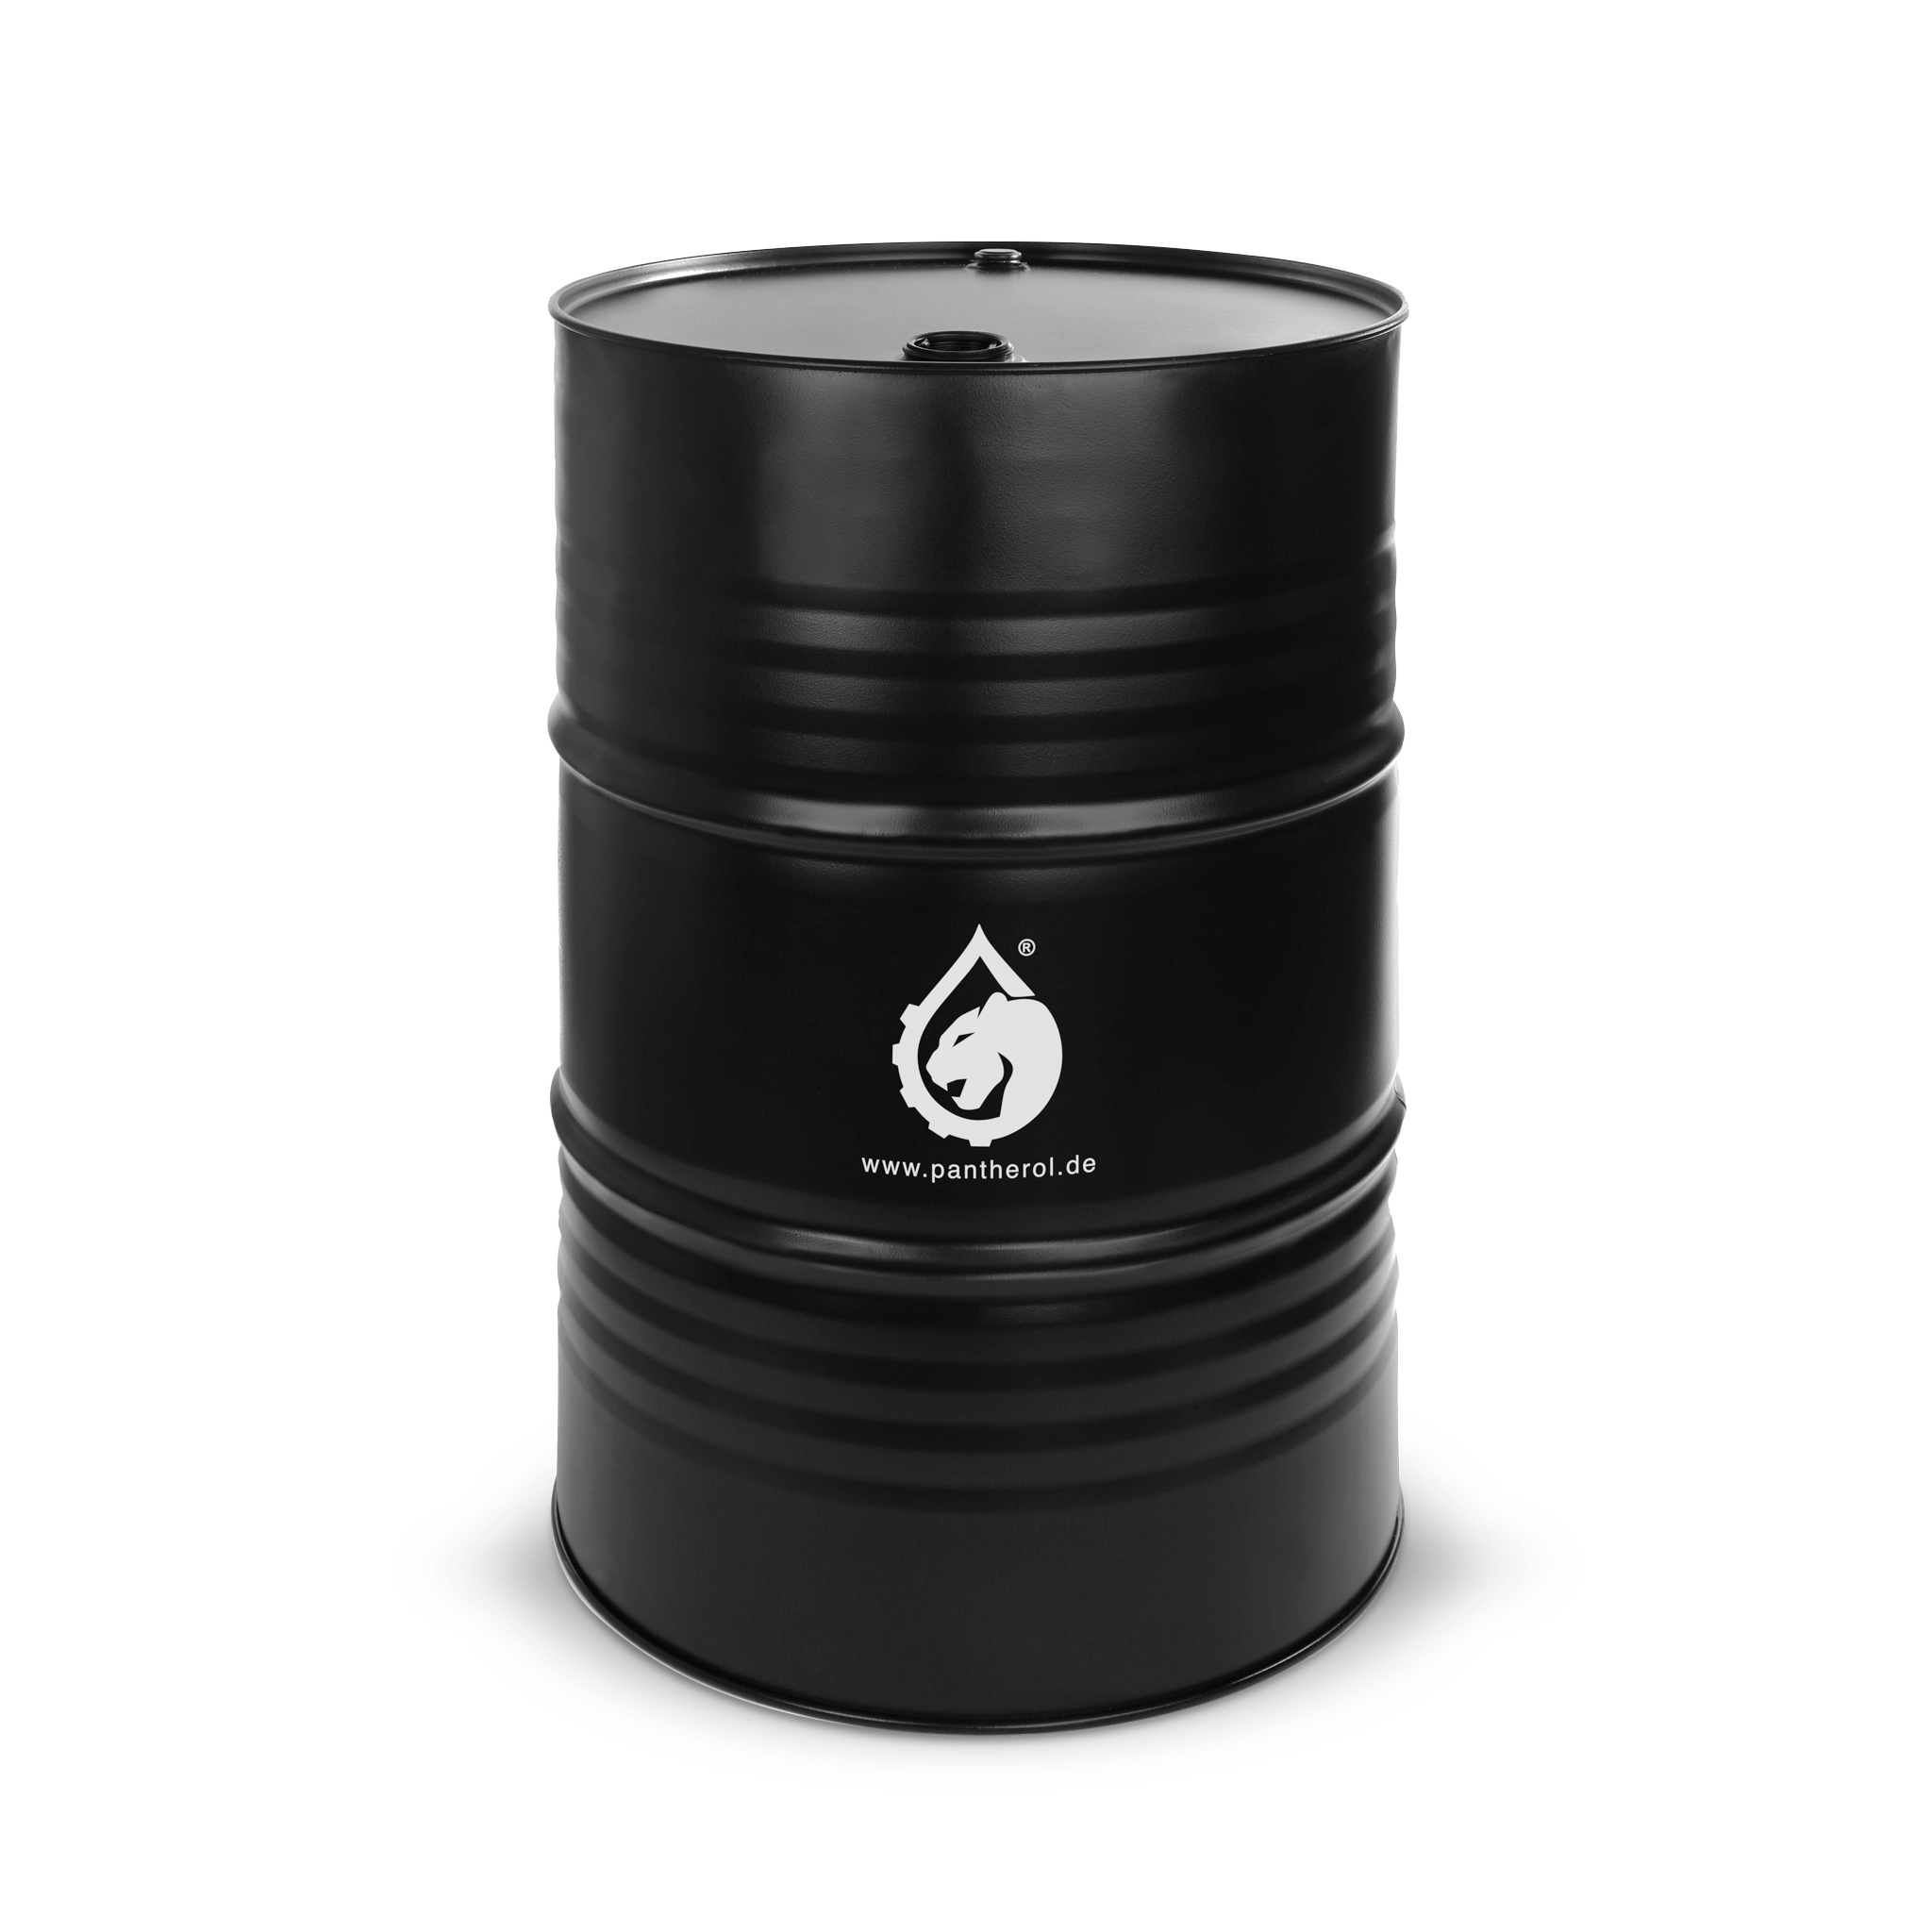 Black oil barrel on white background